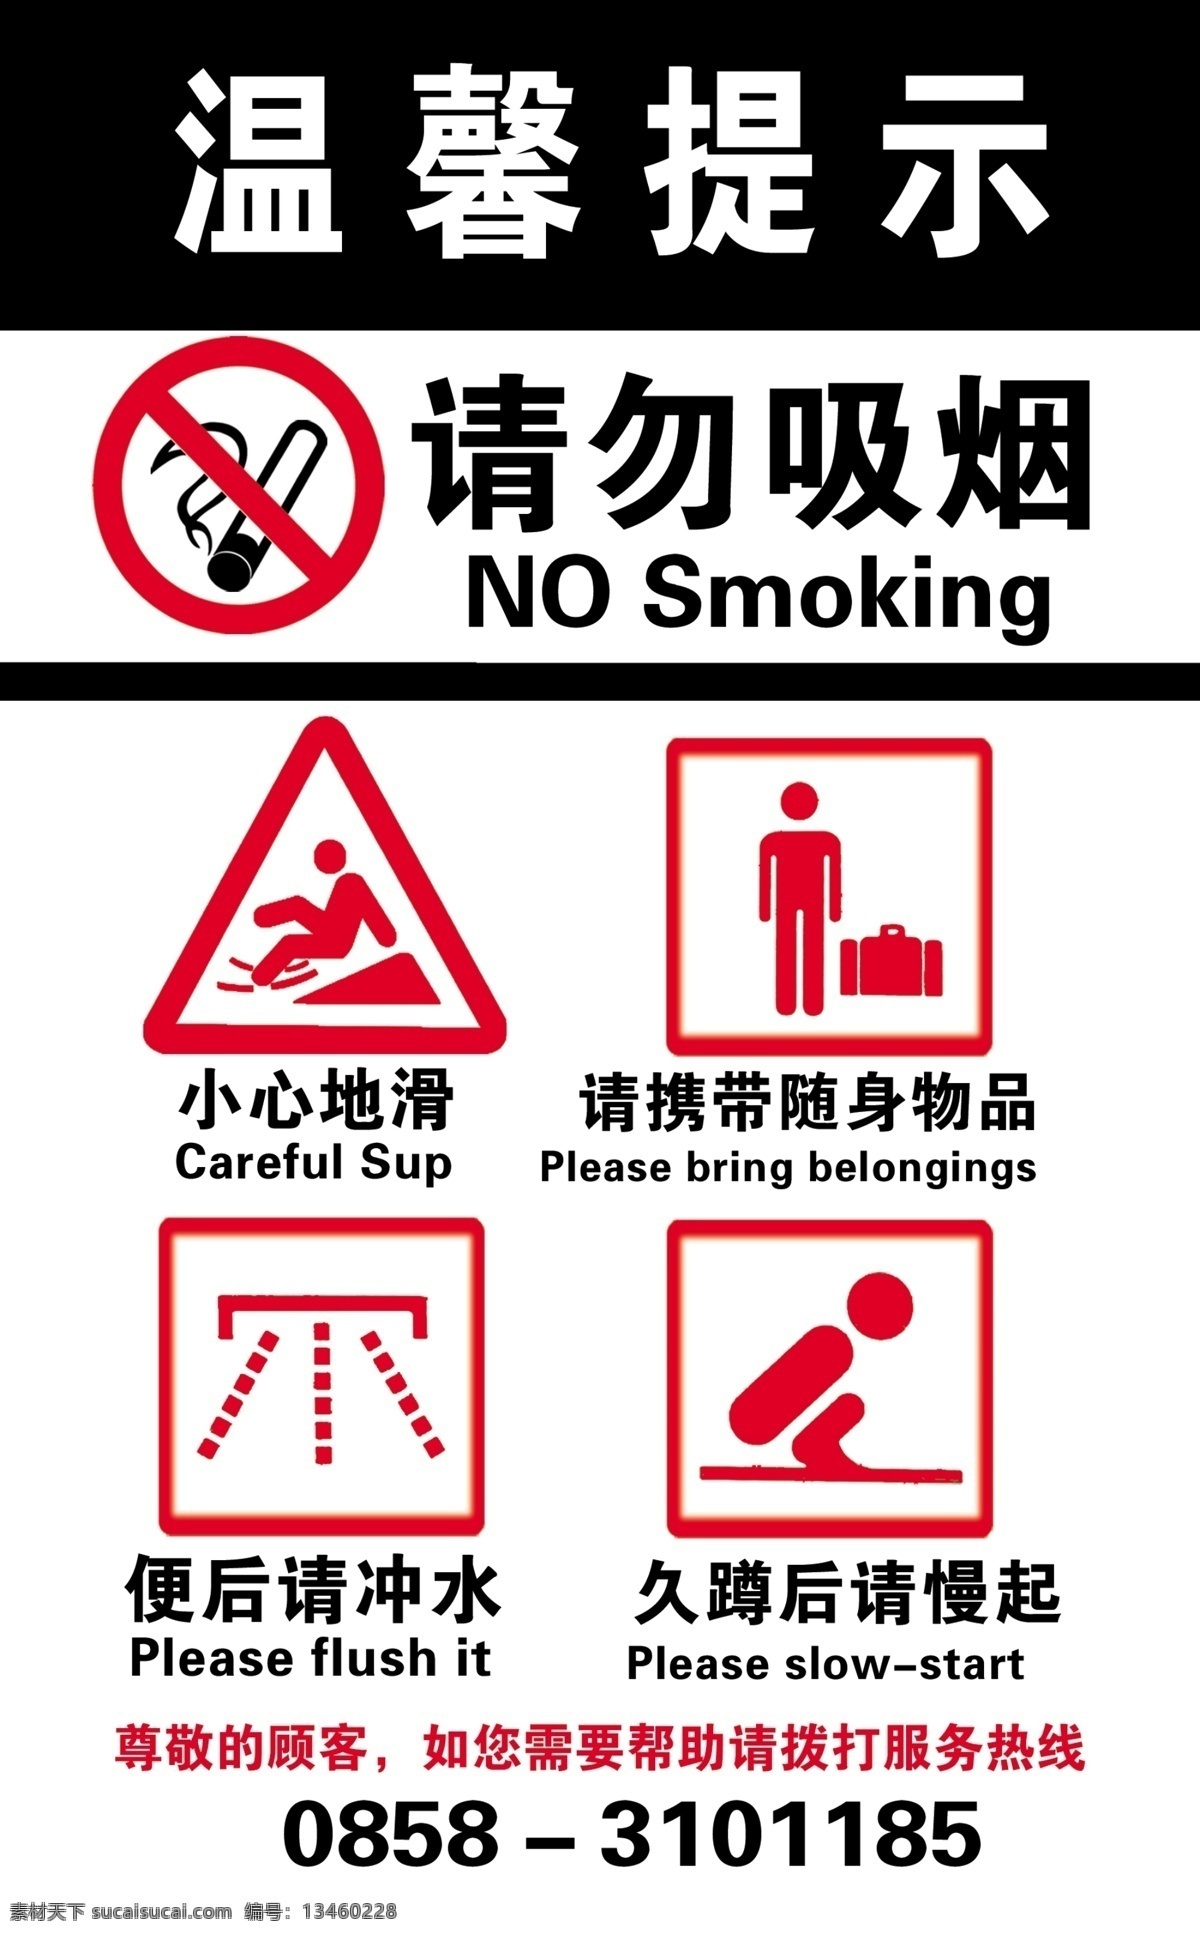 禁止 吸烟 温馨 提示 禁止吸烟 温馨提示 小心地滑 便后请冲水 久蹲后请慢起